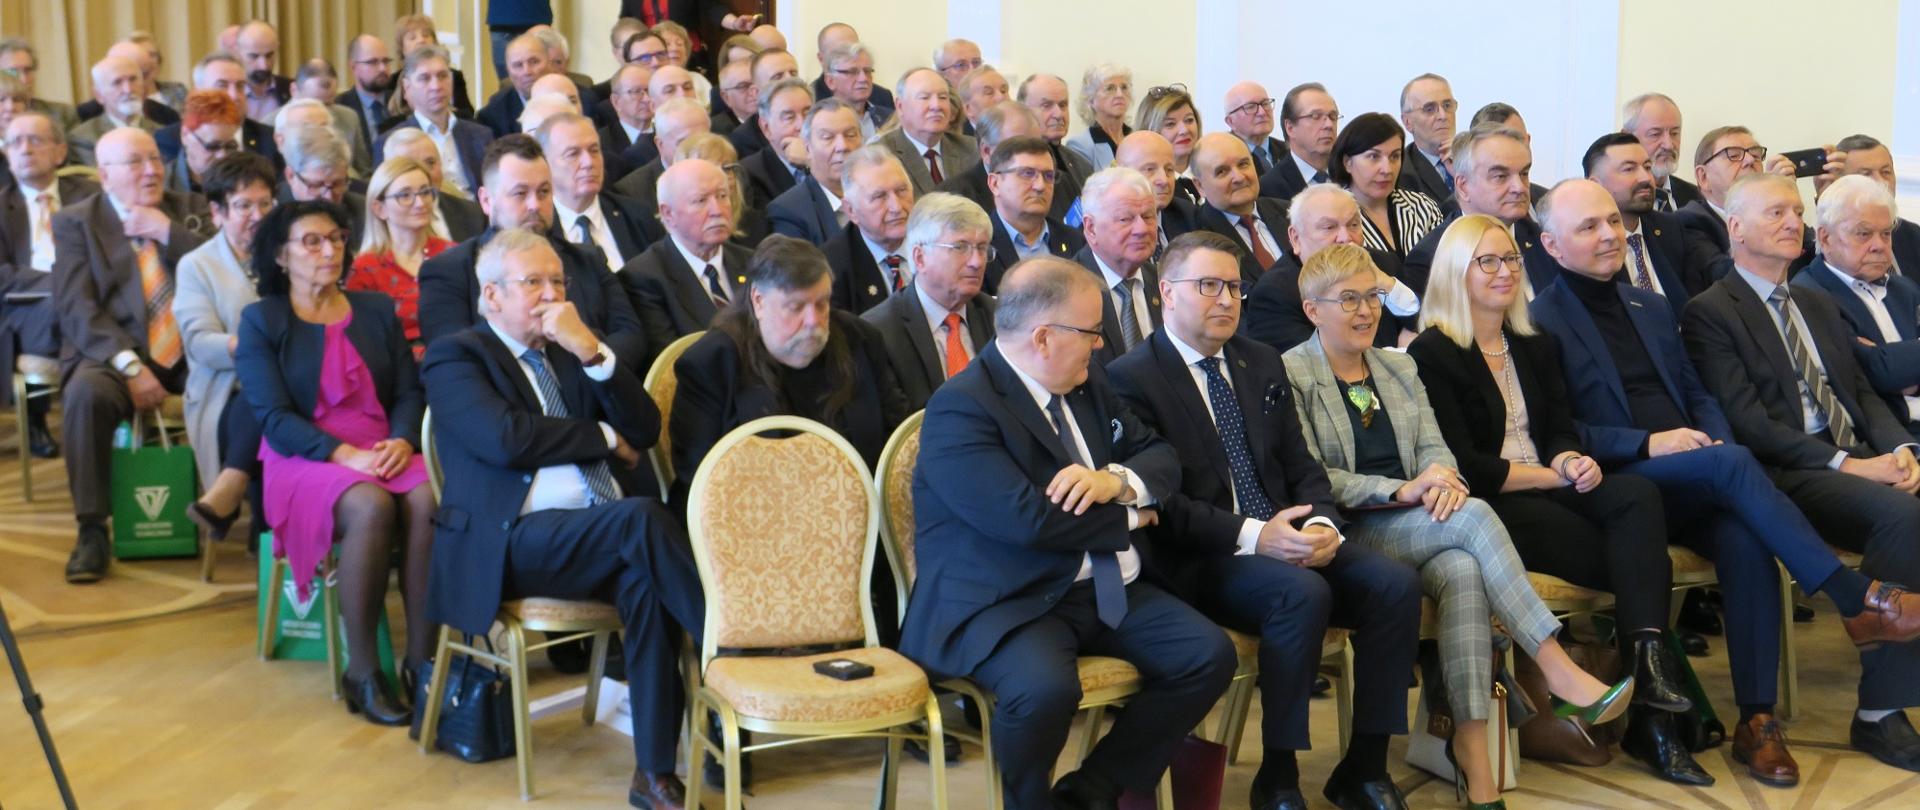 Na sali na ustawionych w rzędy krzesłach siedzi dużo ludzi, w pierwszym rzędzie między mężczyznami w garniturach siedzi wiceminister Mrówczyńska.